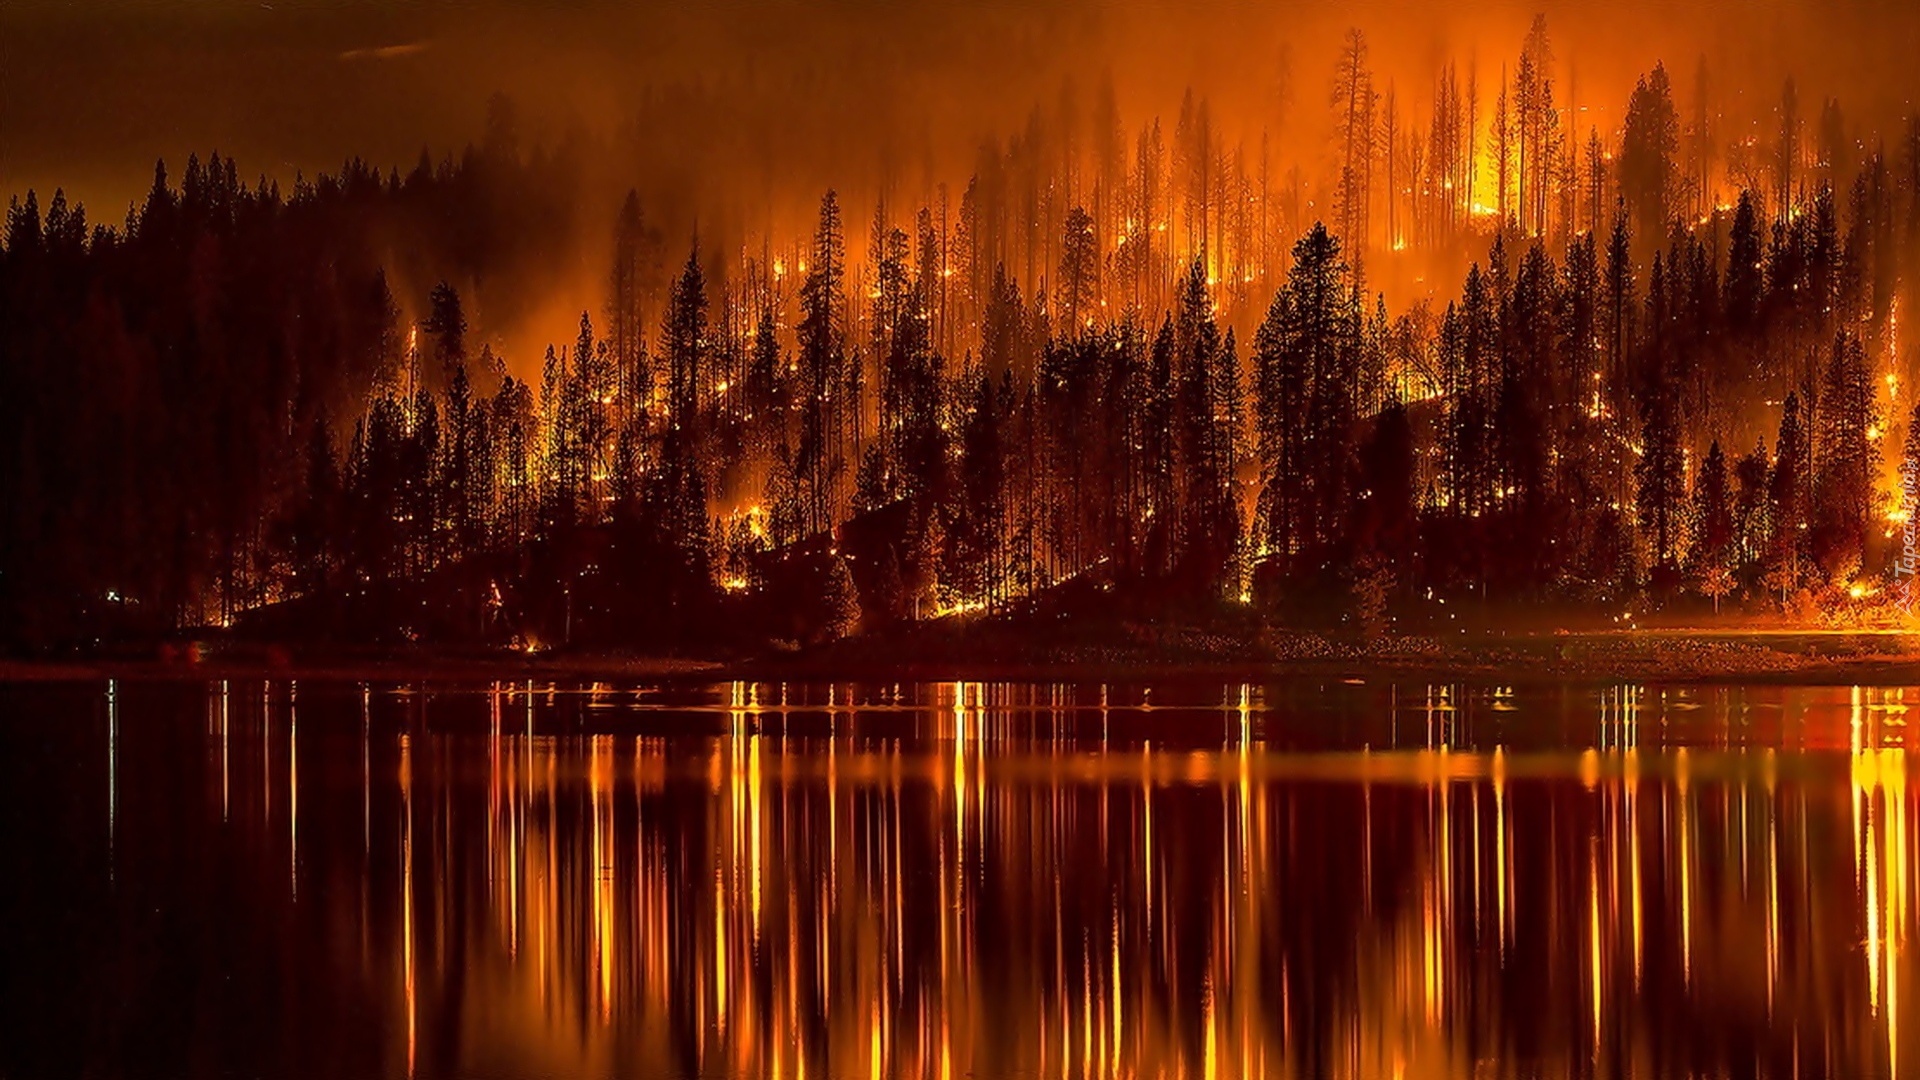 Las, Ogień, Pożar, Woda,  Odbicie